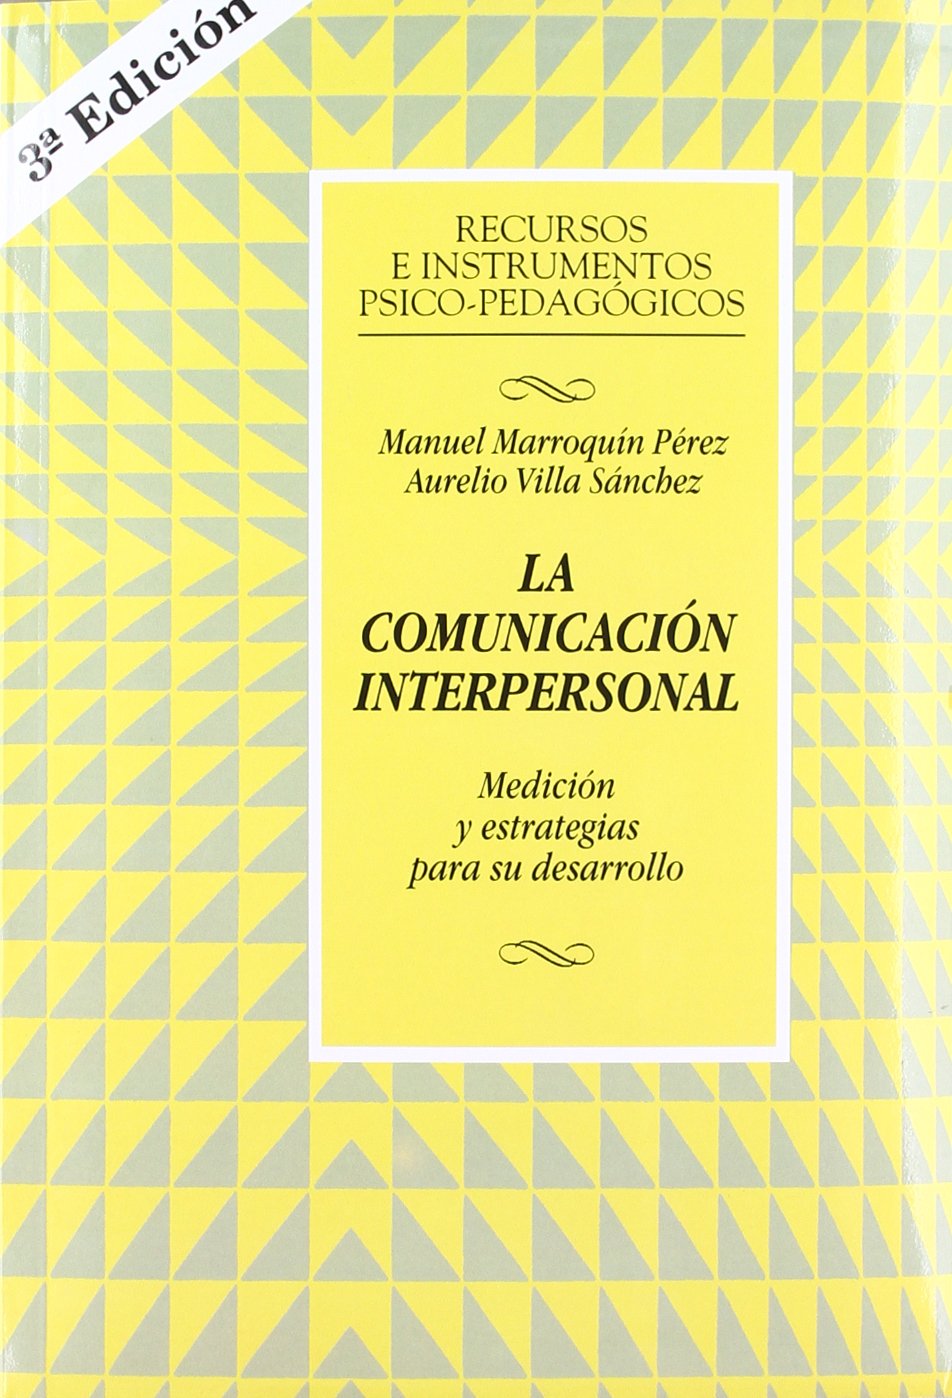 Imagen de portada del libro La comunicación interpersonal